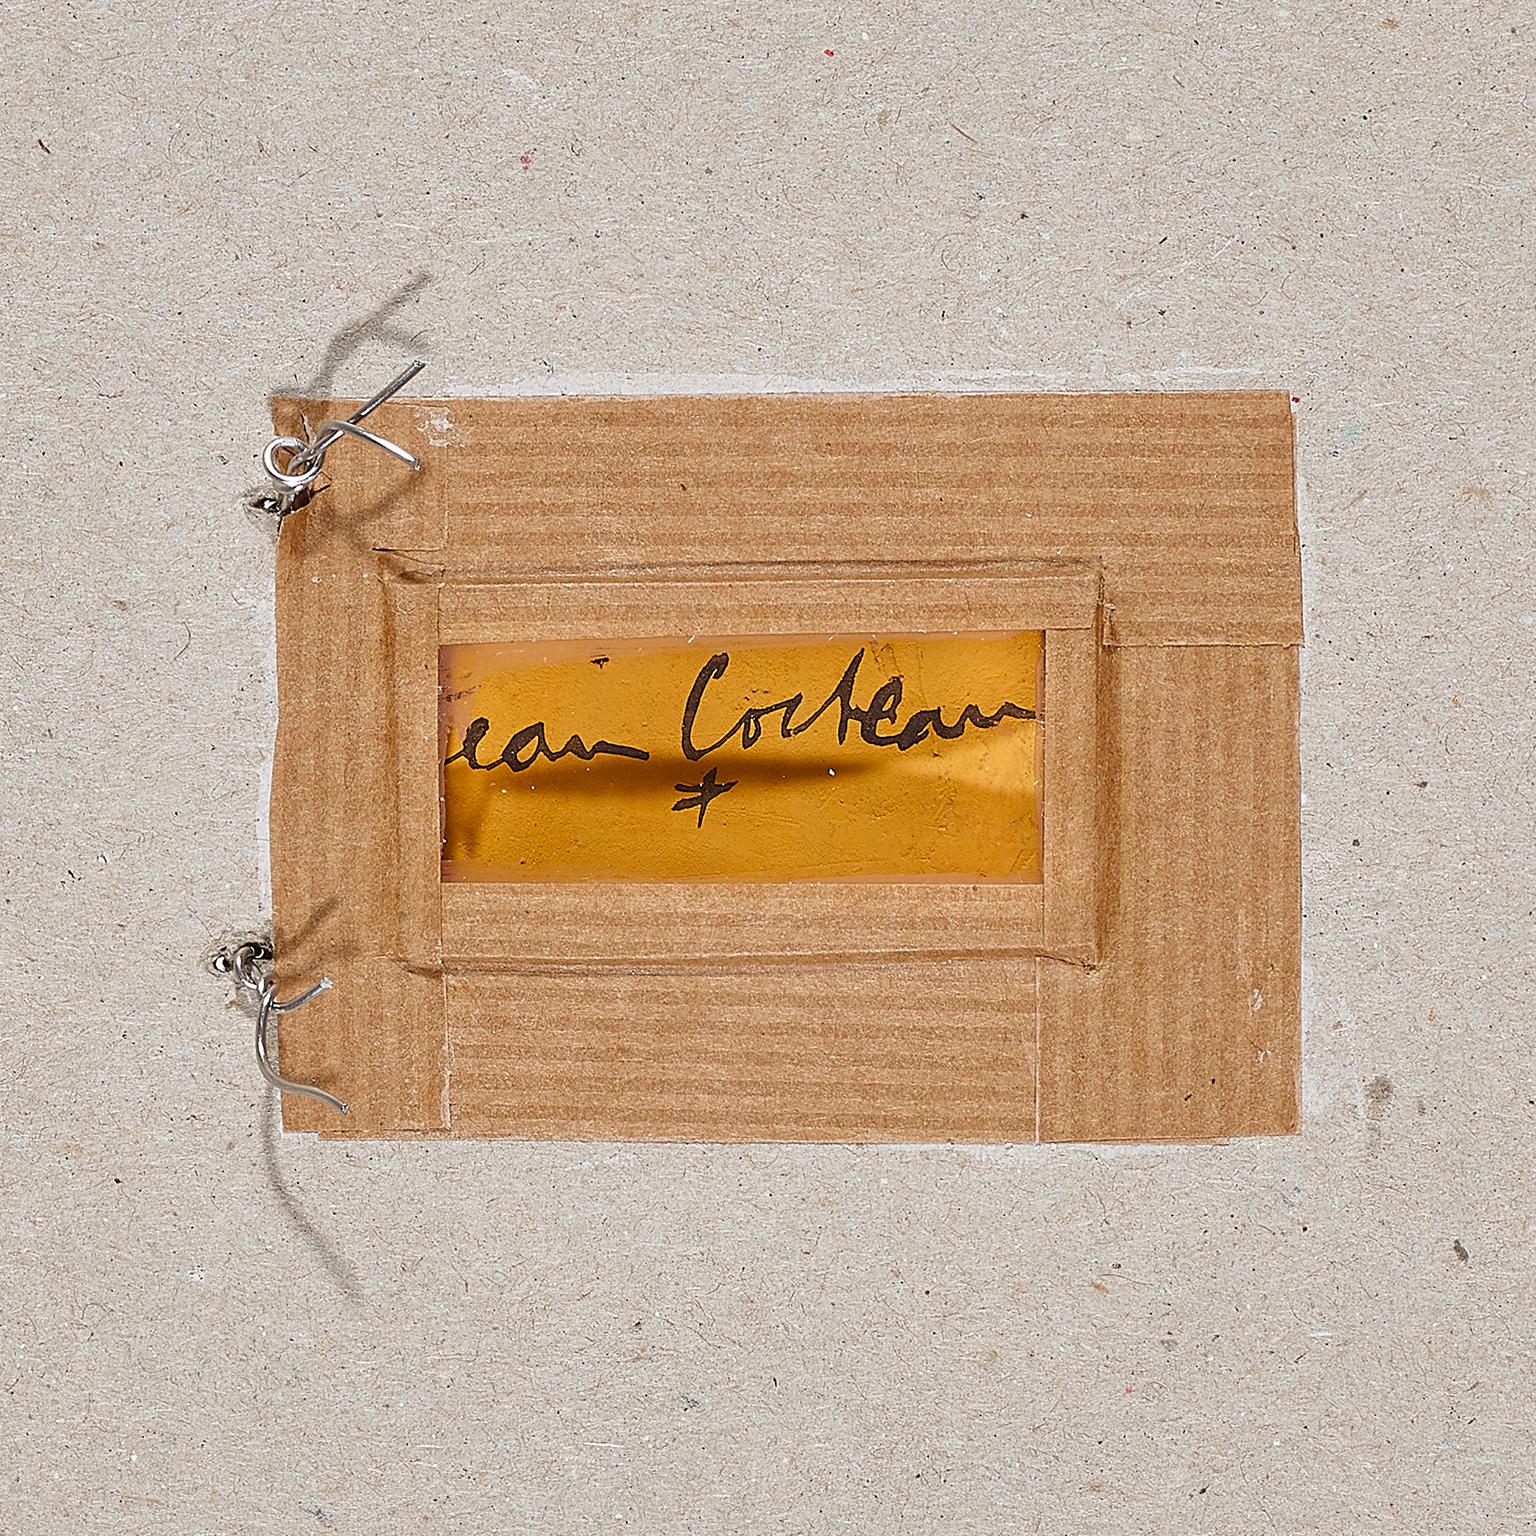 Jean Cocteau ( 1889 -1963 )

Vé : (& Astrology ) ( Blue variant ) . 1958 .
4éme variante : terre incrustée blanche et bleue 
Size : 7 cm . Signed underneath .

Astrology : Pendentif ovale 5blue variant ). 1958.
4ème Variante : terre incrustée